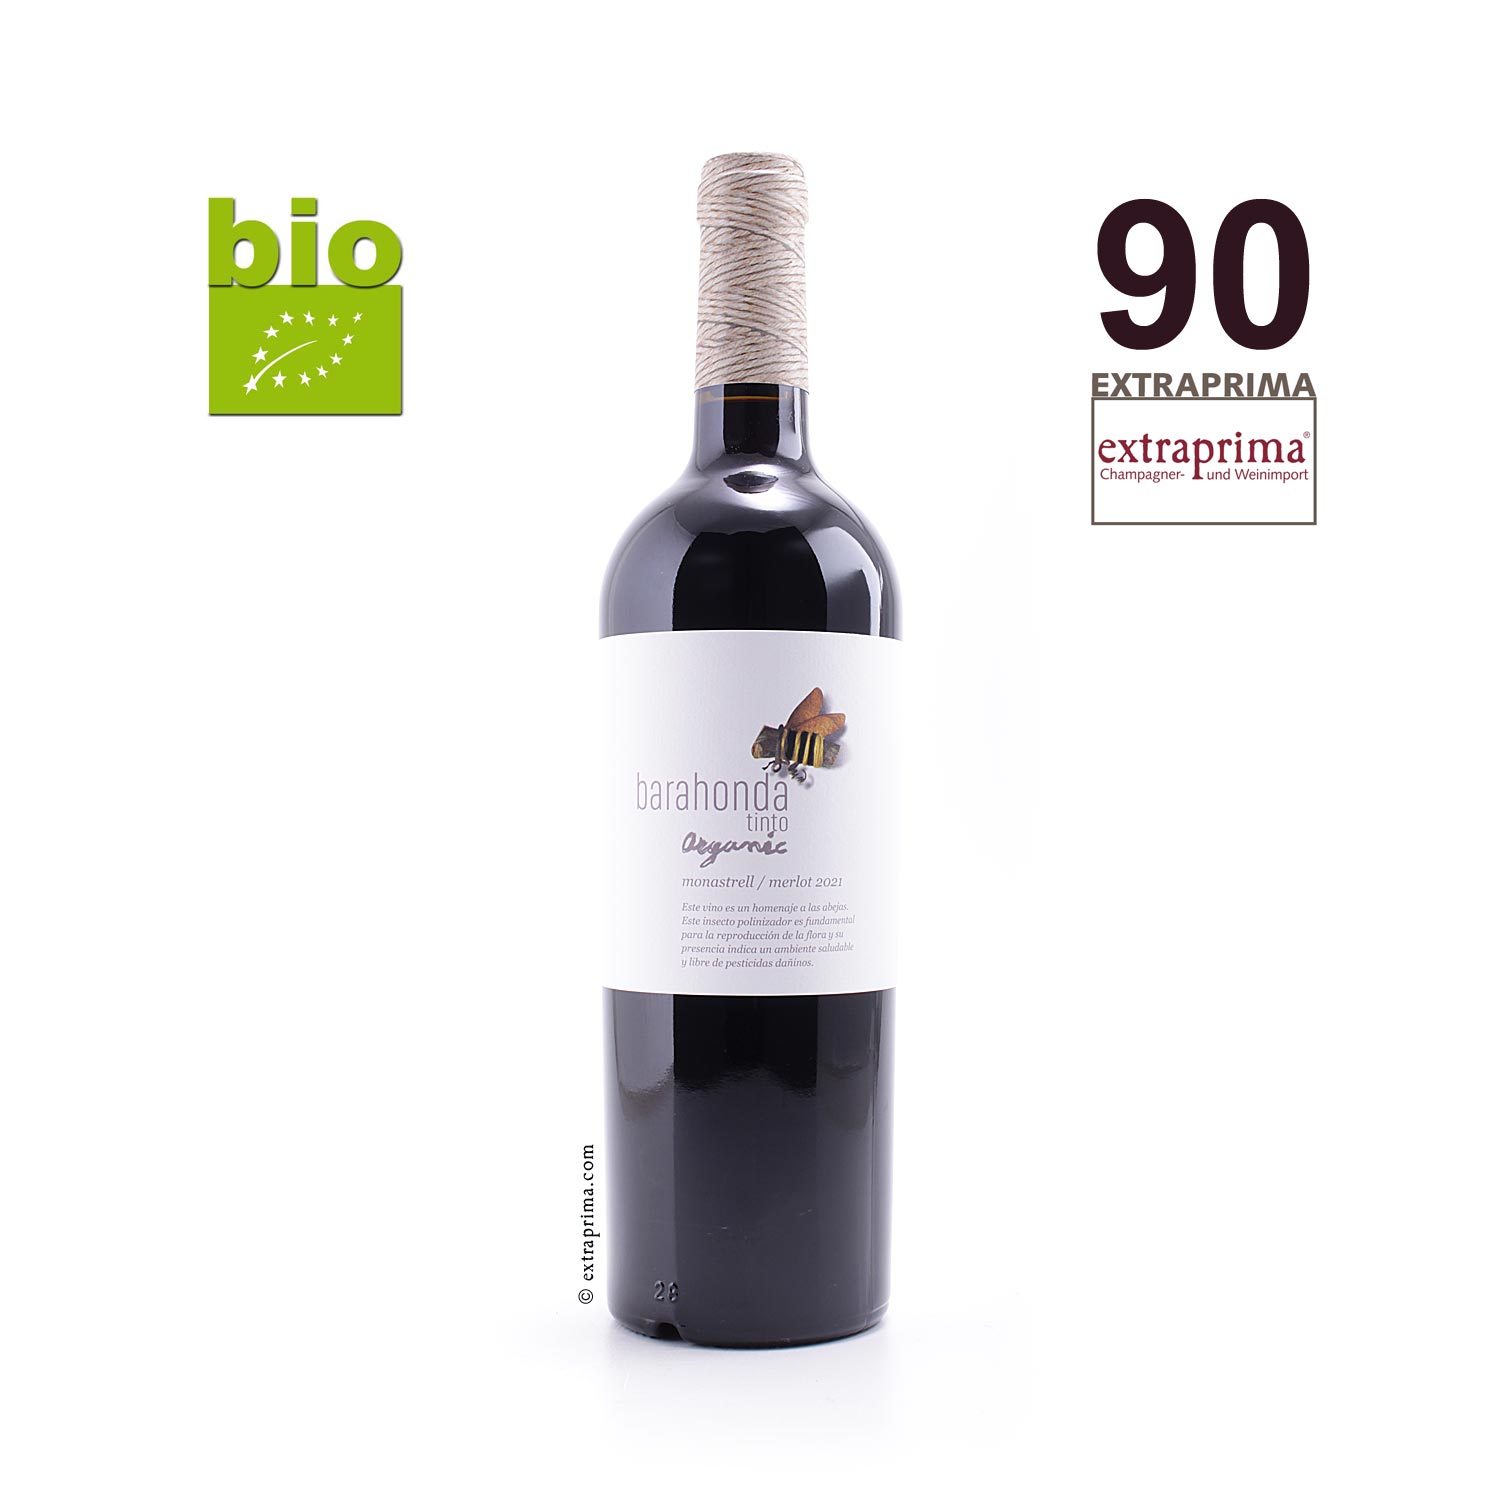 2021 Yecla Organic Monastrell-Merlot Barahonda | Extraprima - Weinversand